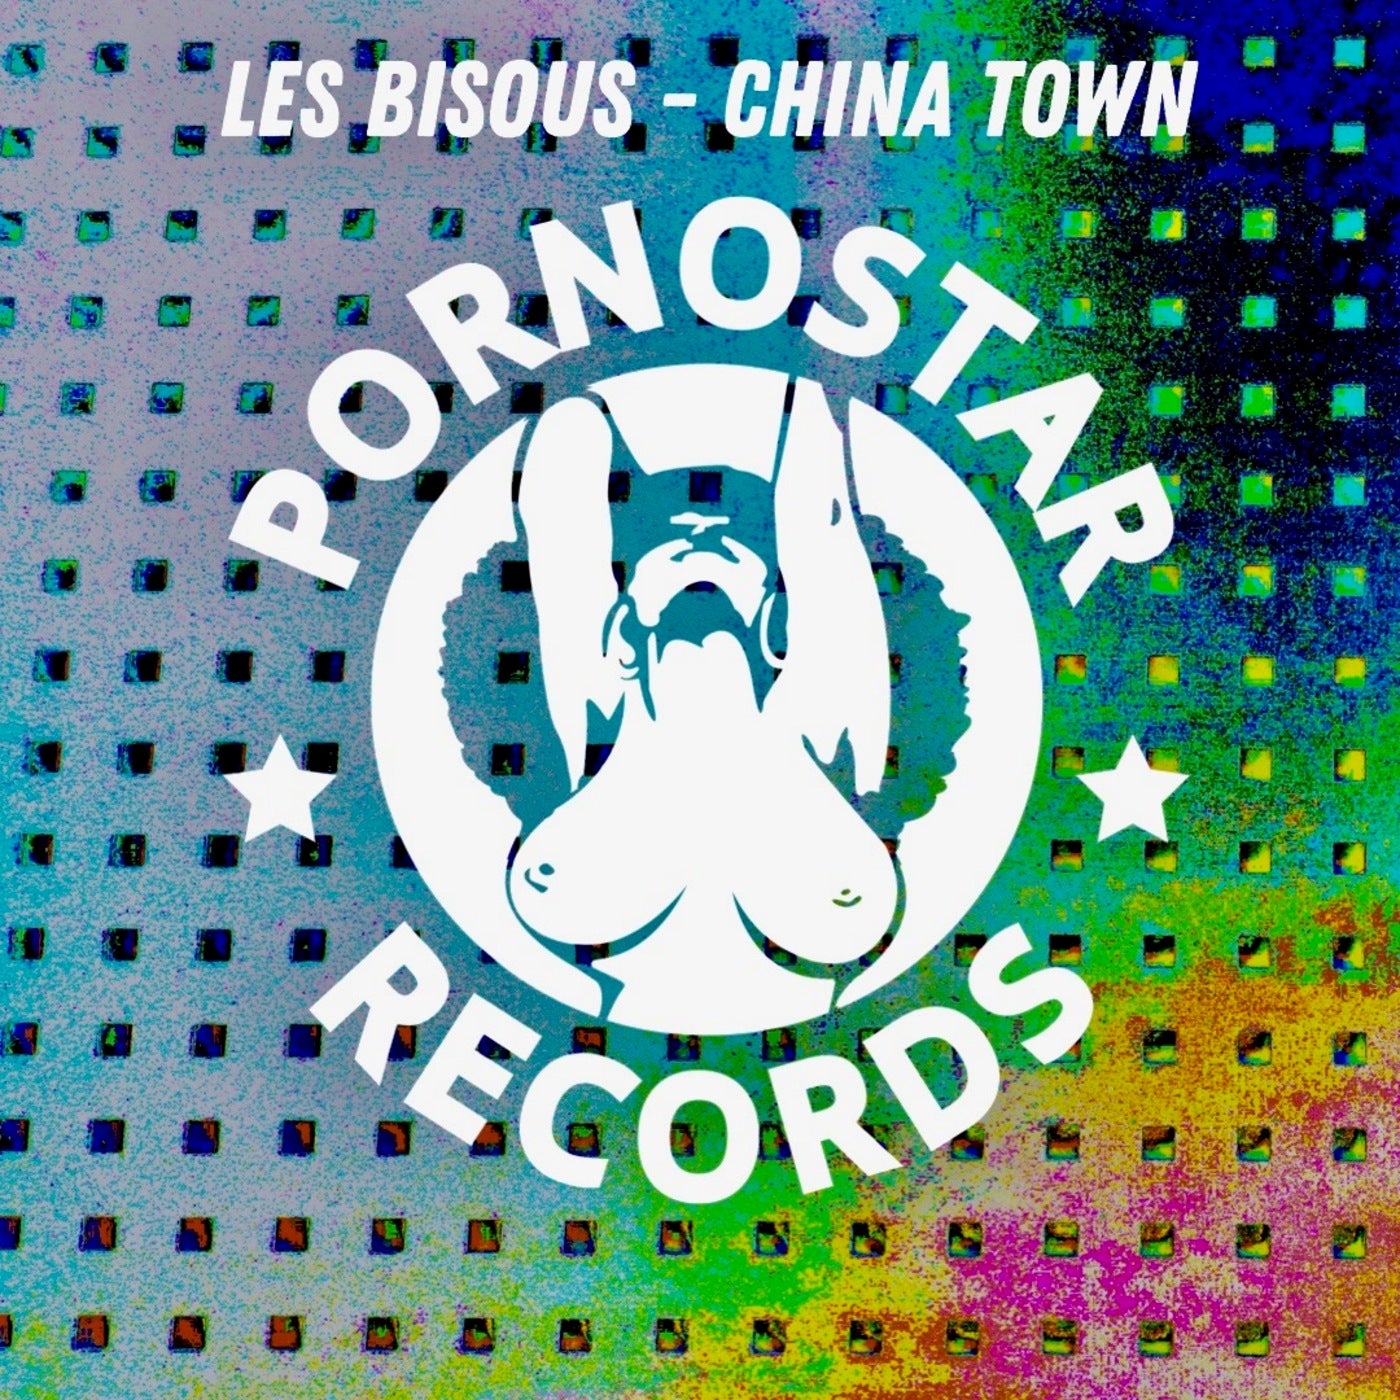 Les Bisous - Les Bisous - China Town [PR810]